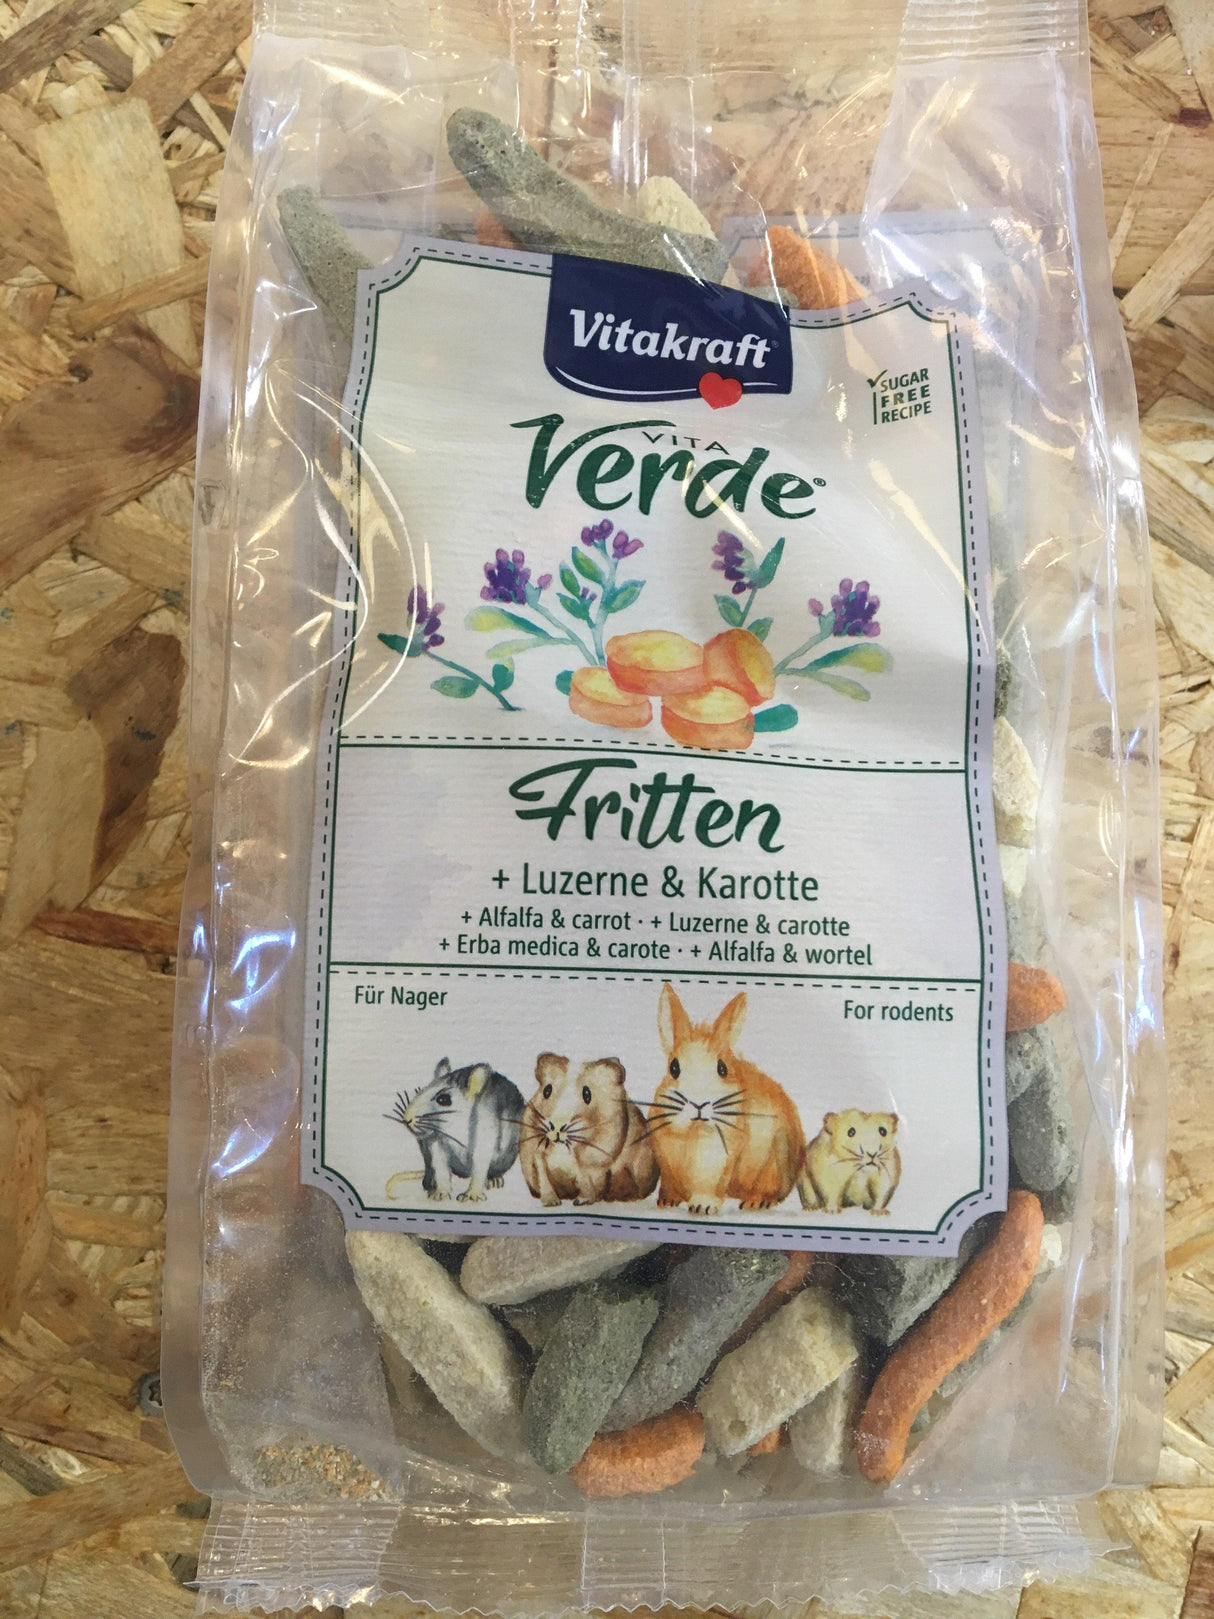 En nærende snackpose fyldt med Fritten (gulerødder) og Luzerne (grøntsager) fra osmedkaeledyr.dk.